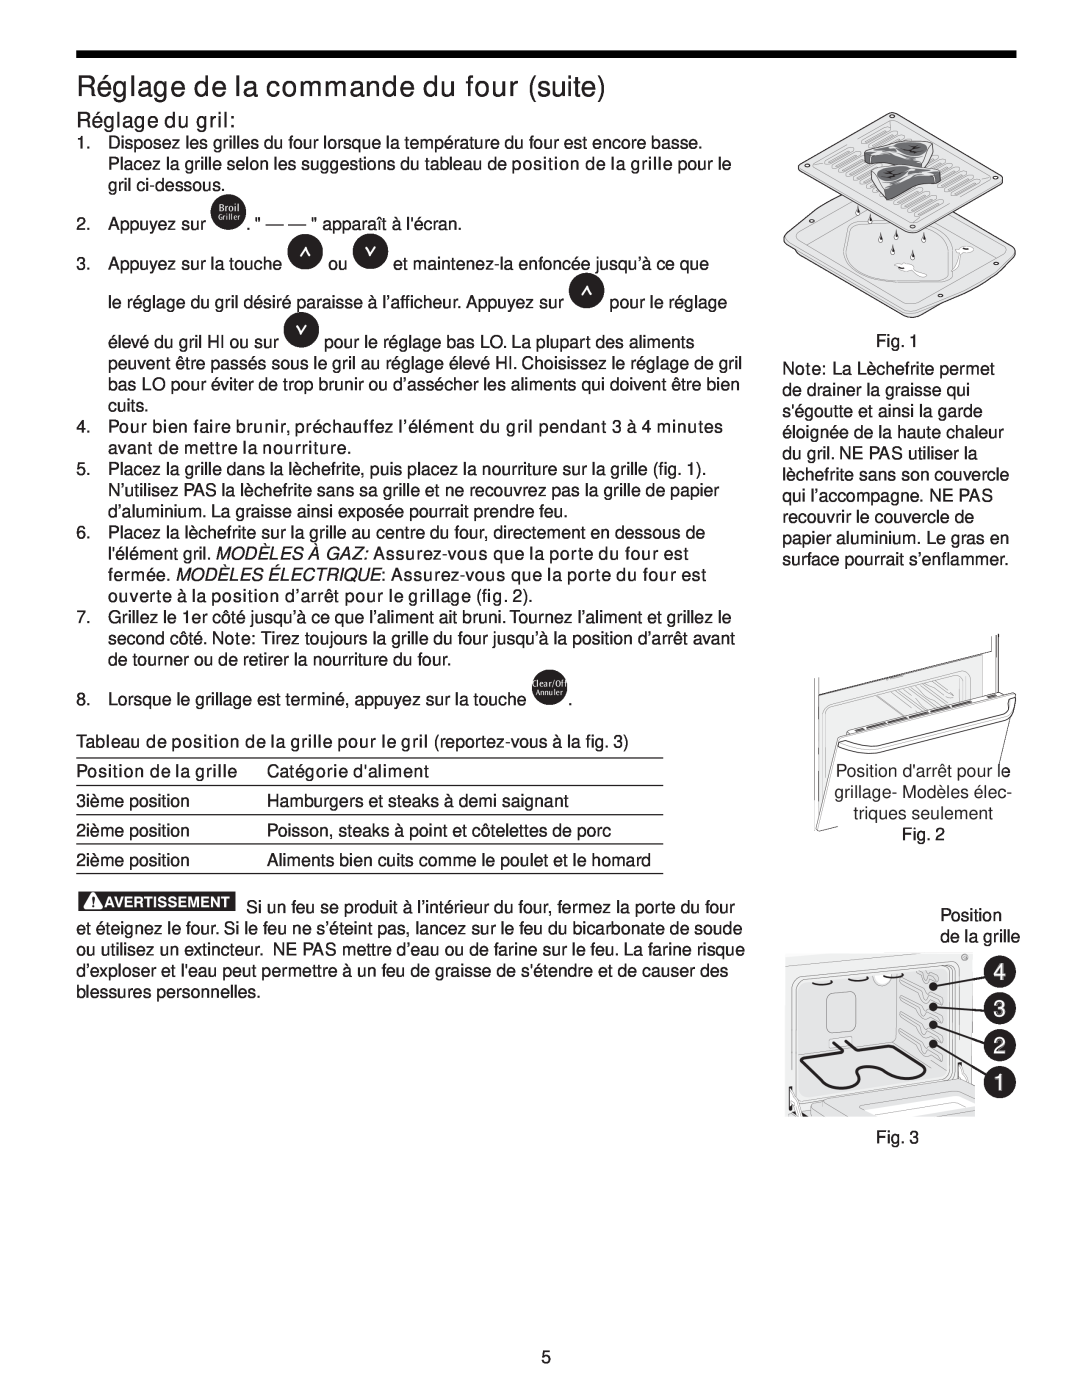 Frigidaire CFES365EC manual Réglage du gril, Tableau de position de la grille pour le gril reportez-vous à la fig 